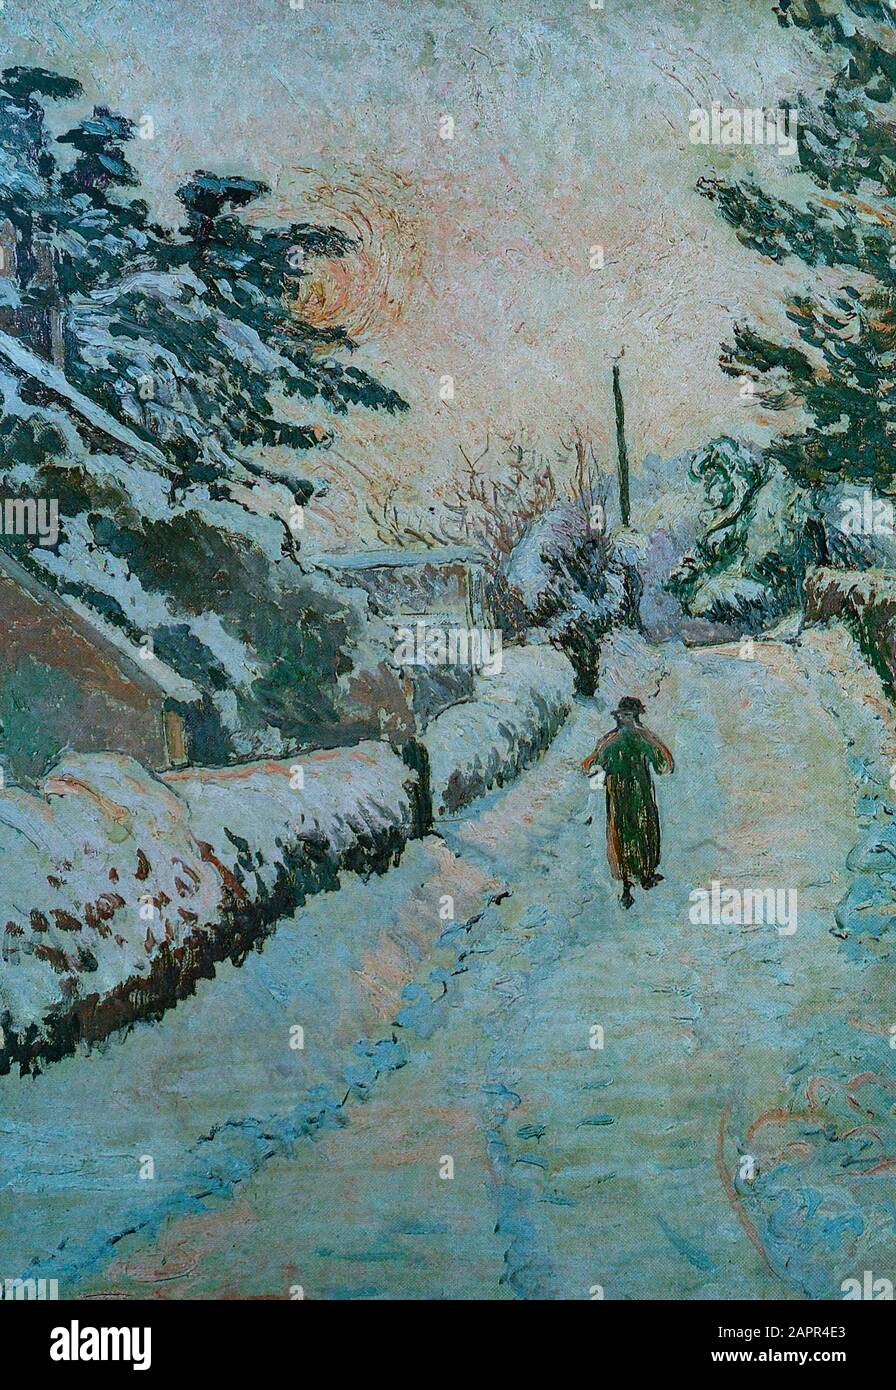 'My Cottage', une voie anglaise enneigée par Lucien Pissarro (1863-1944), qui a travaillé en France jusqu'en 1890 après quoi il était basé en Grande-Bretagne. Printmaker, graveur de bois, concepteur, imprimante de livres fins et peintre de paysage techniques impressionnistes et néo-impressionnistes. Banque D'Images